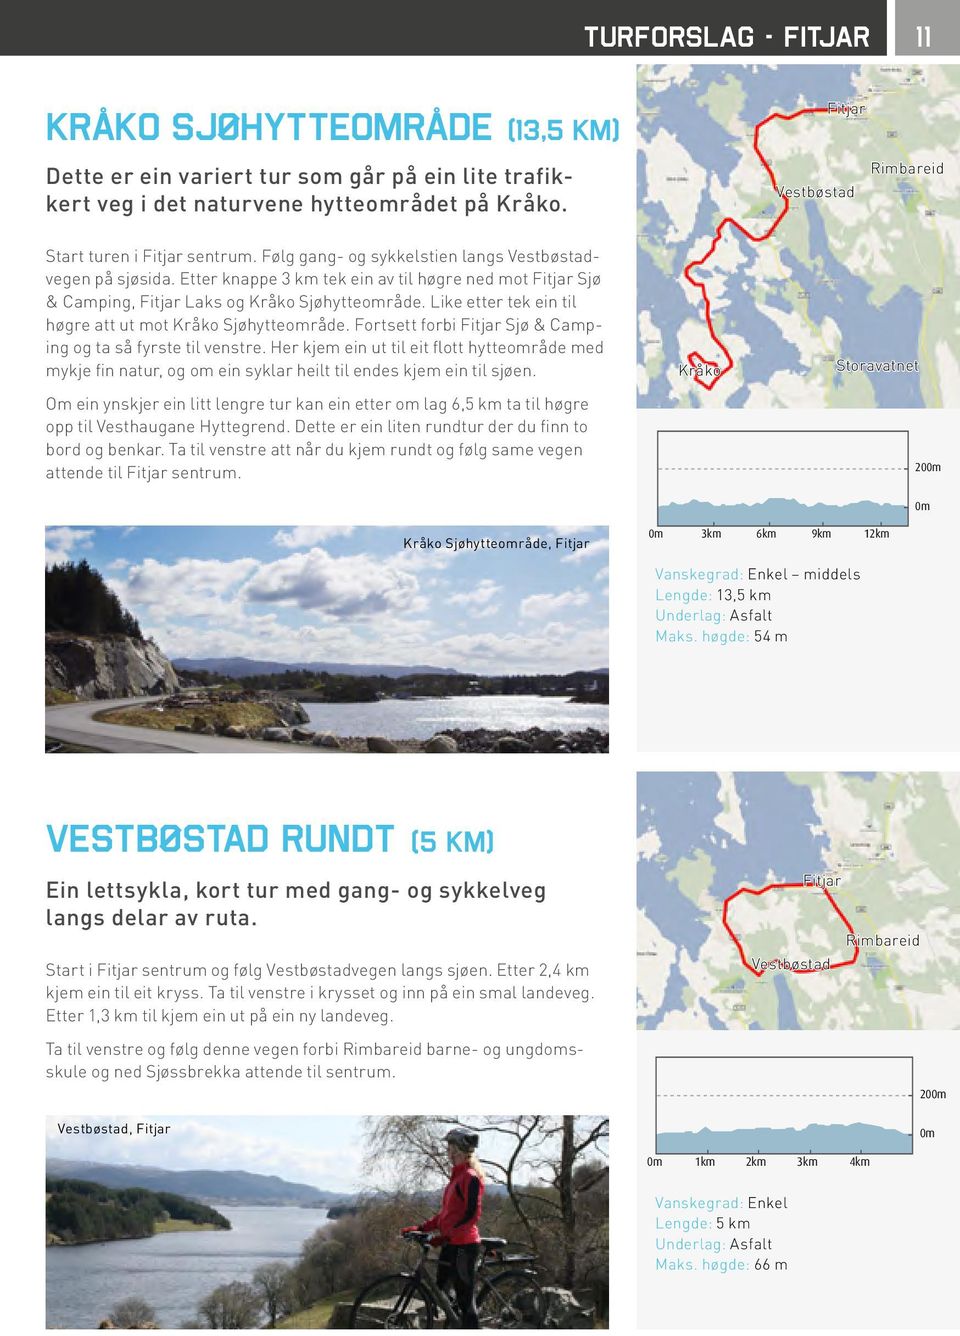 Etter knappe 3 km tek ein av til høgre ned mot Fitjar Sjø & Camping, Fitjar Laks og Kråko Sjøhytteområde. Like etter tek ein til høgre att ut mot Kråko Sjøhytteområde.